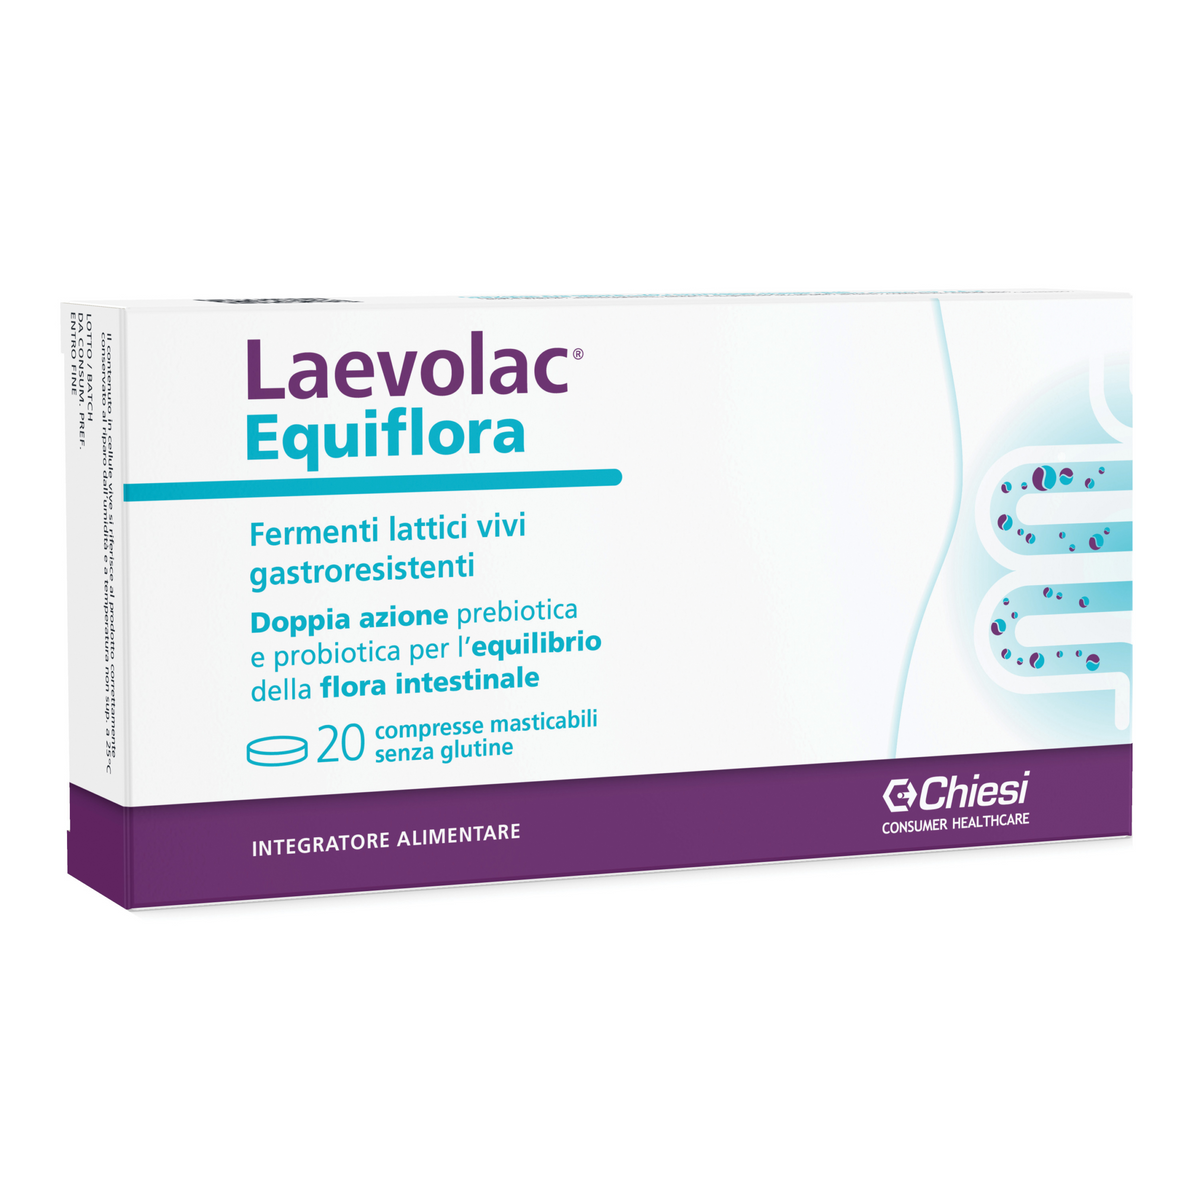 Laevolac Equiflora 20 tablets